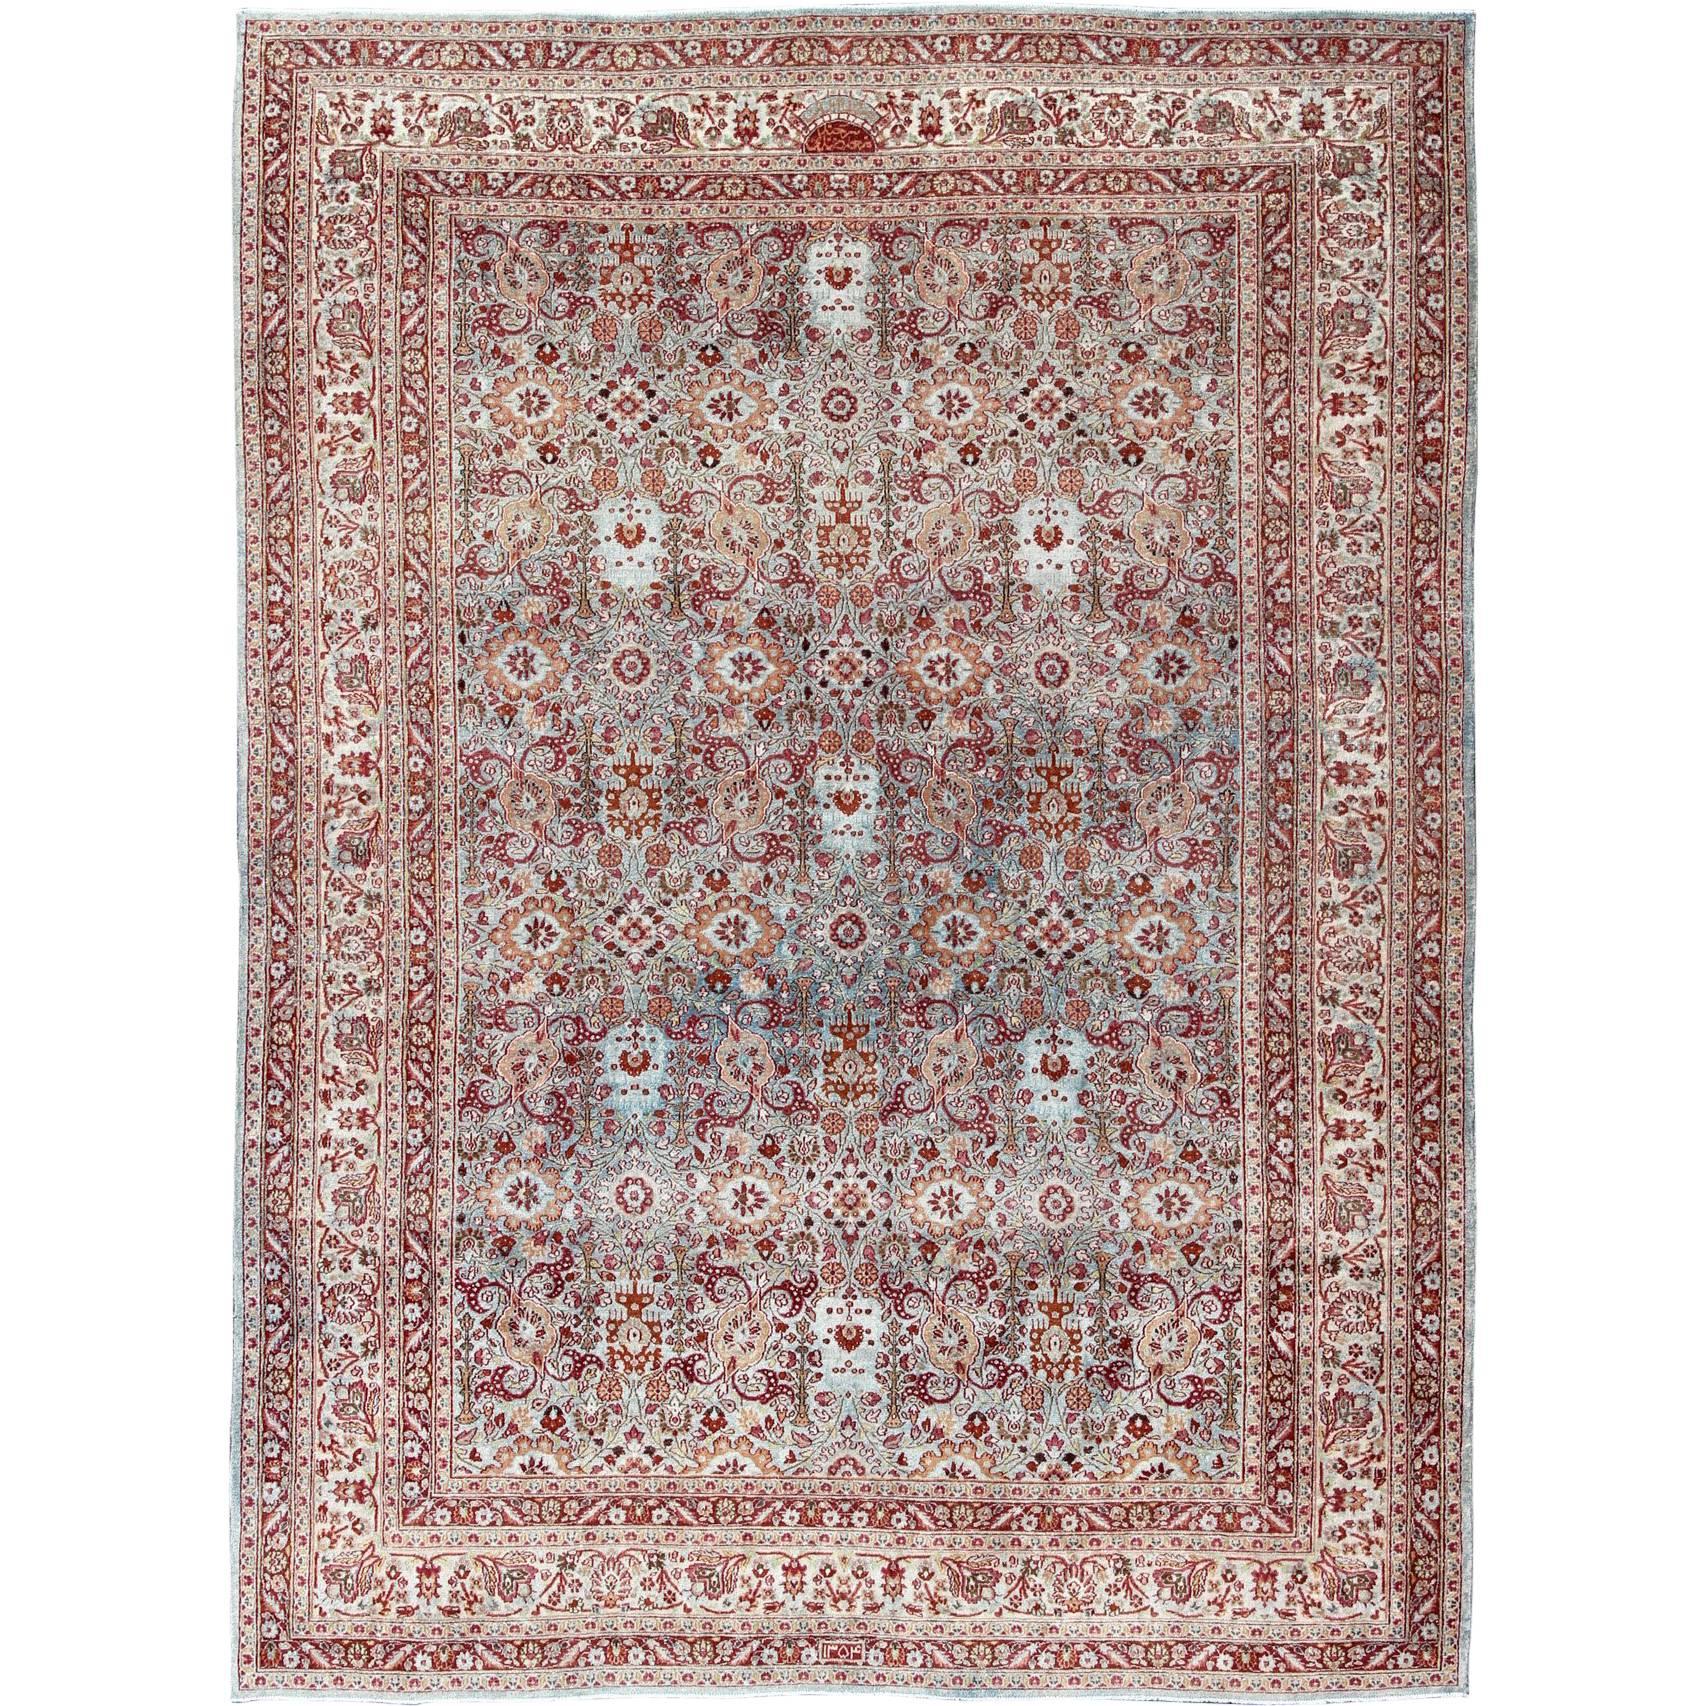 Antiker persischer Teppich in Burgund und Grau mit verschnörkeltem Blumenmuster aus Chorassan